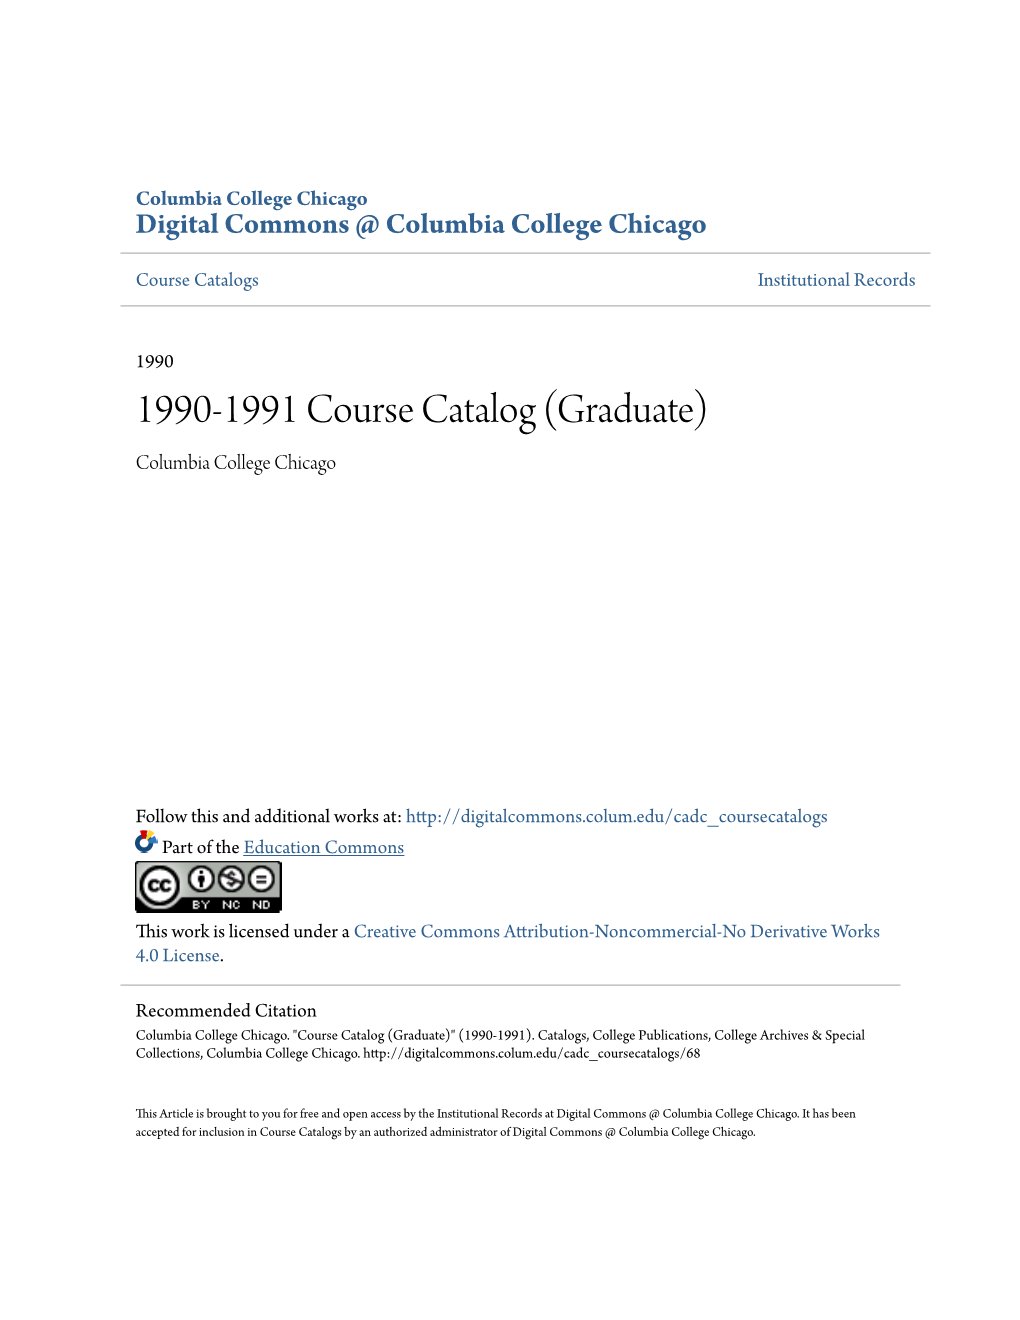 1990-1991 Course Catalog (Graduate) Columbia College Chicago